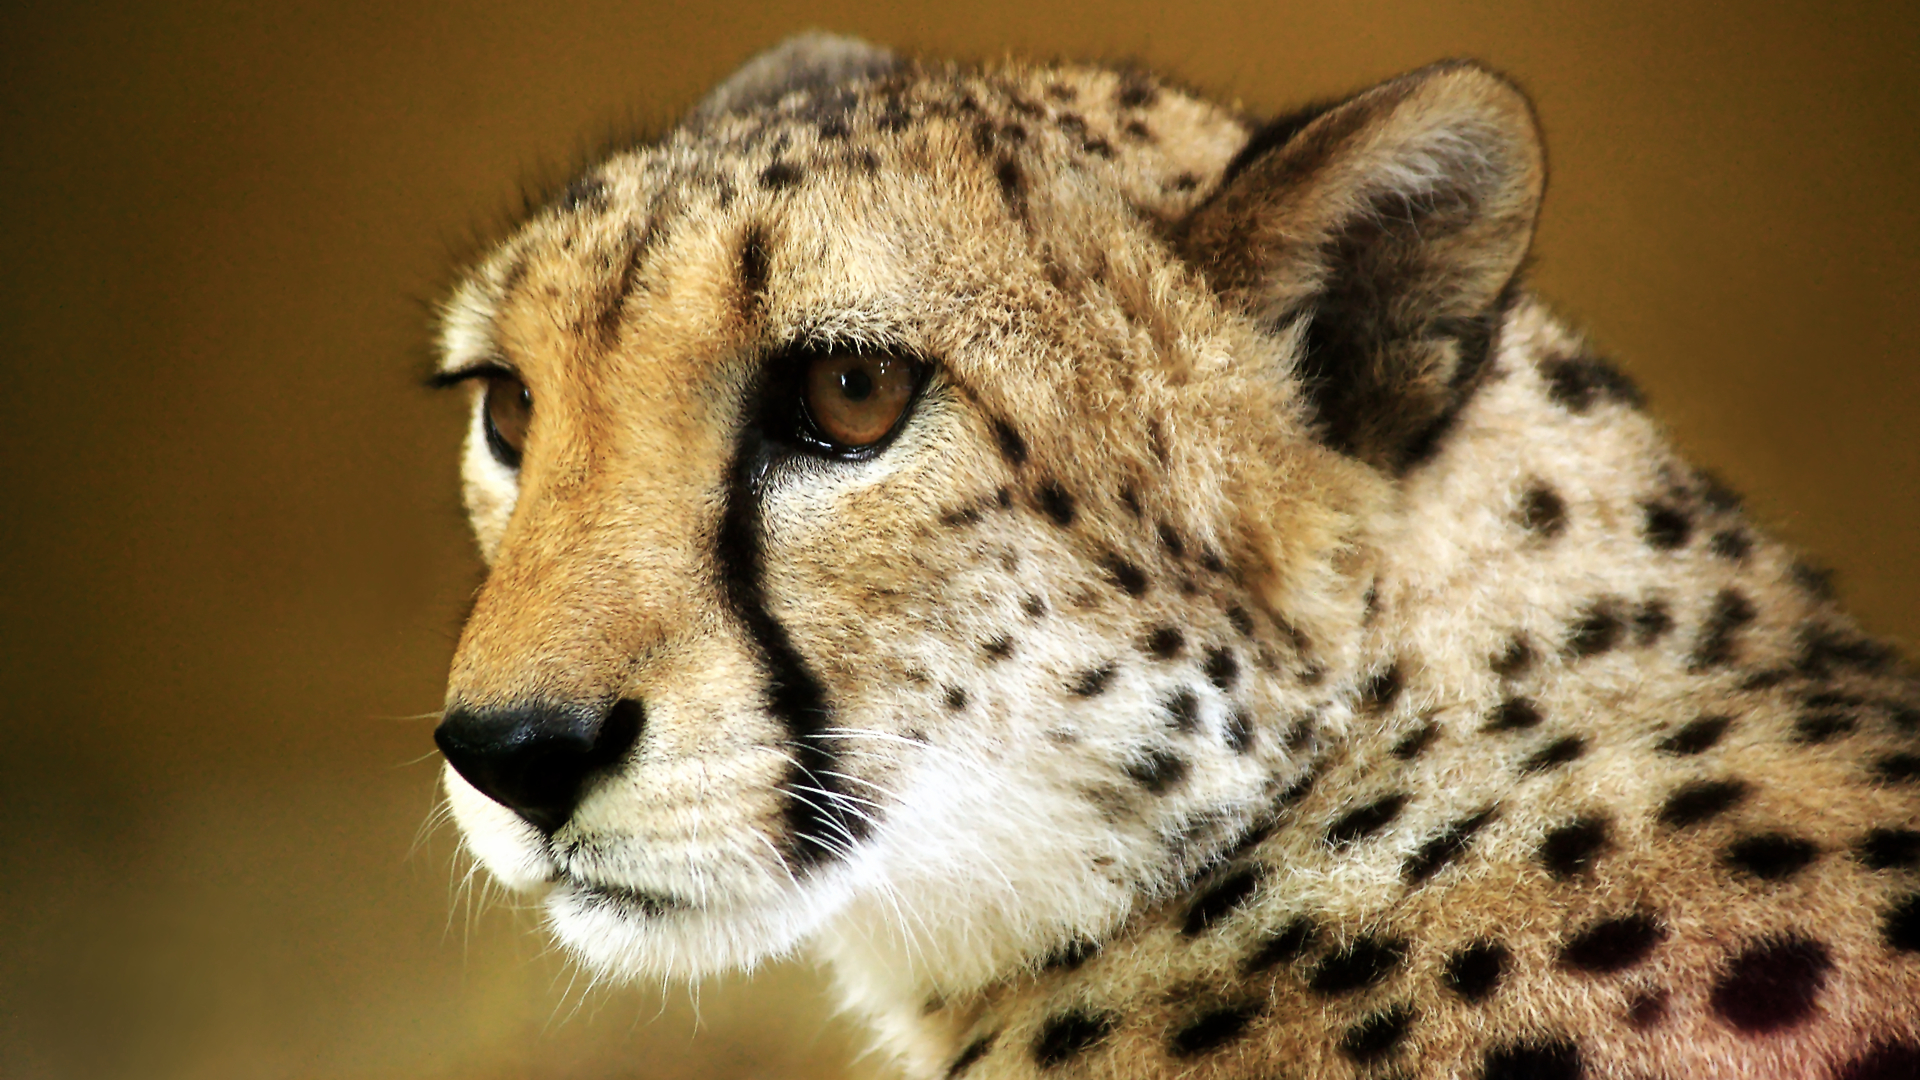 Cheetah Wallpapers HD | PixelsTalk Net